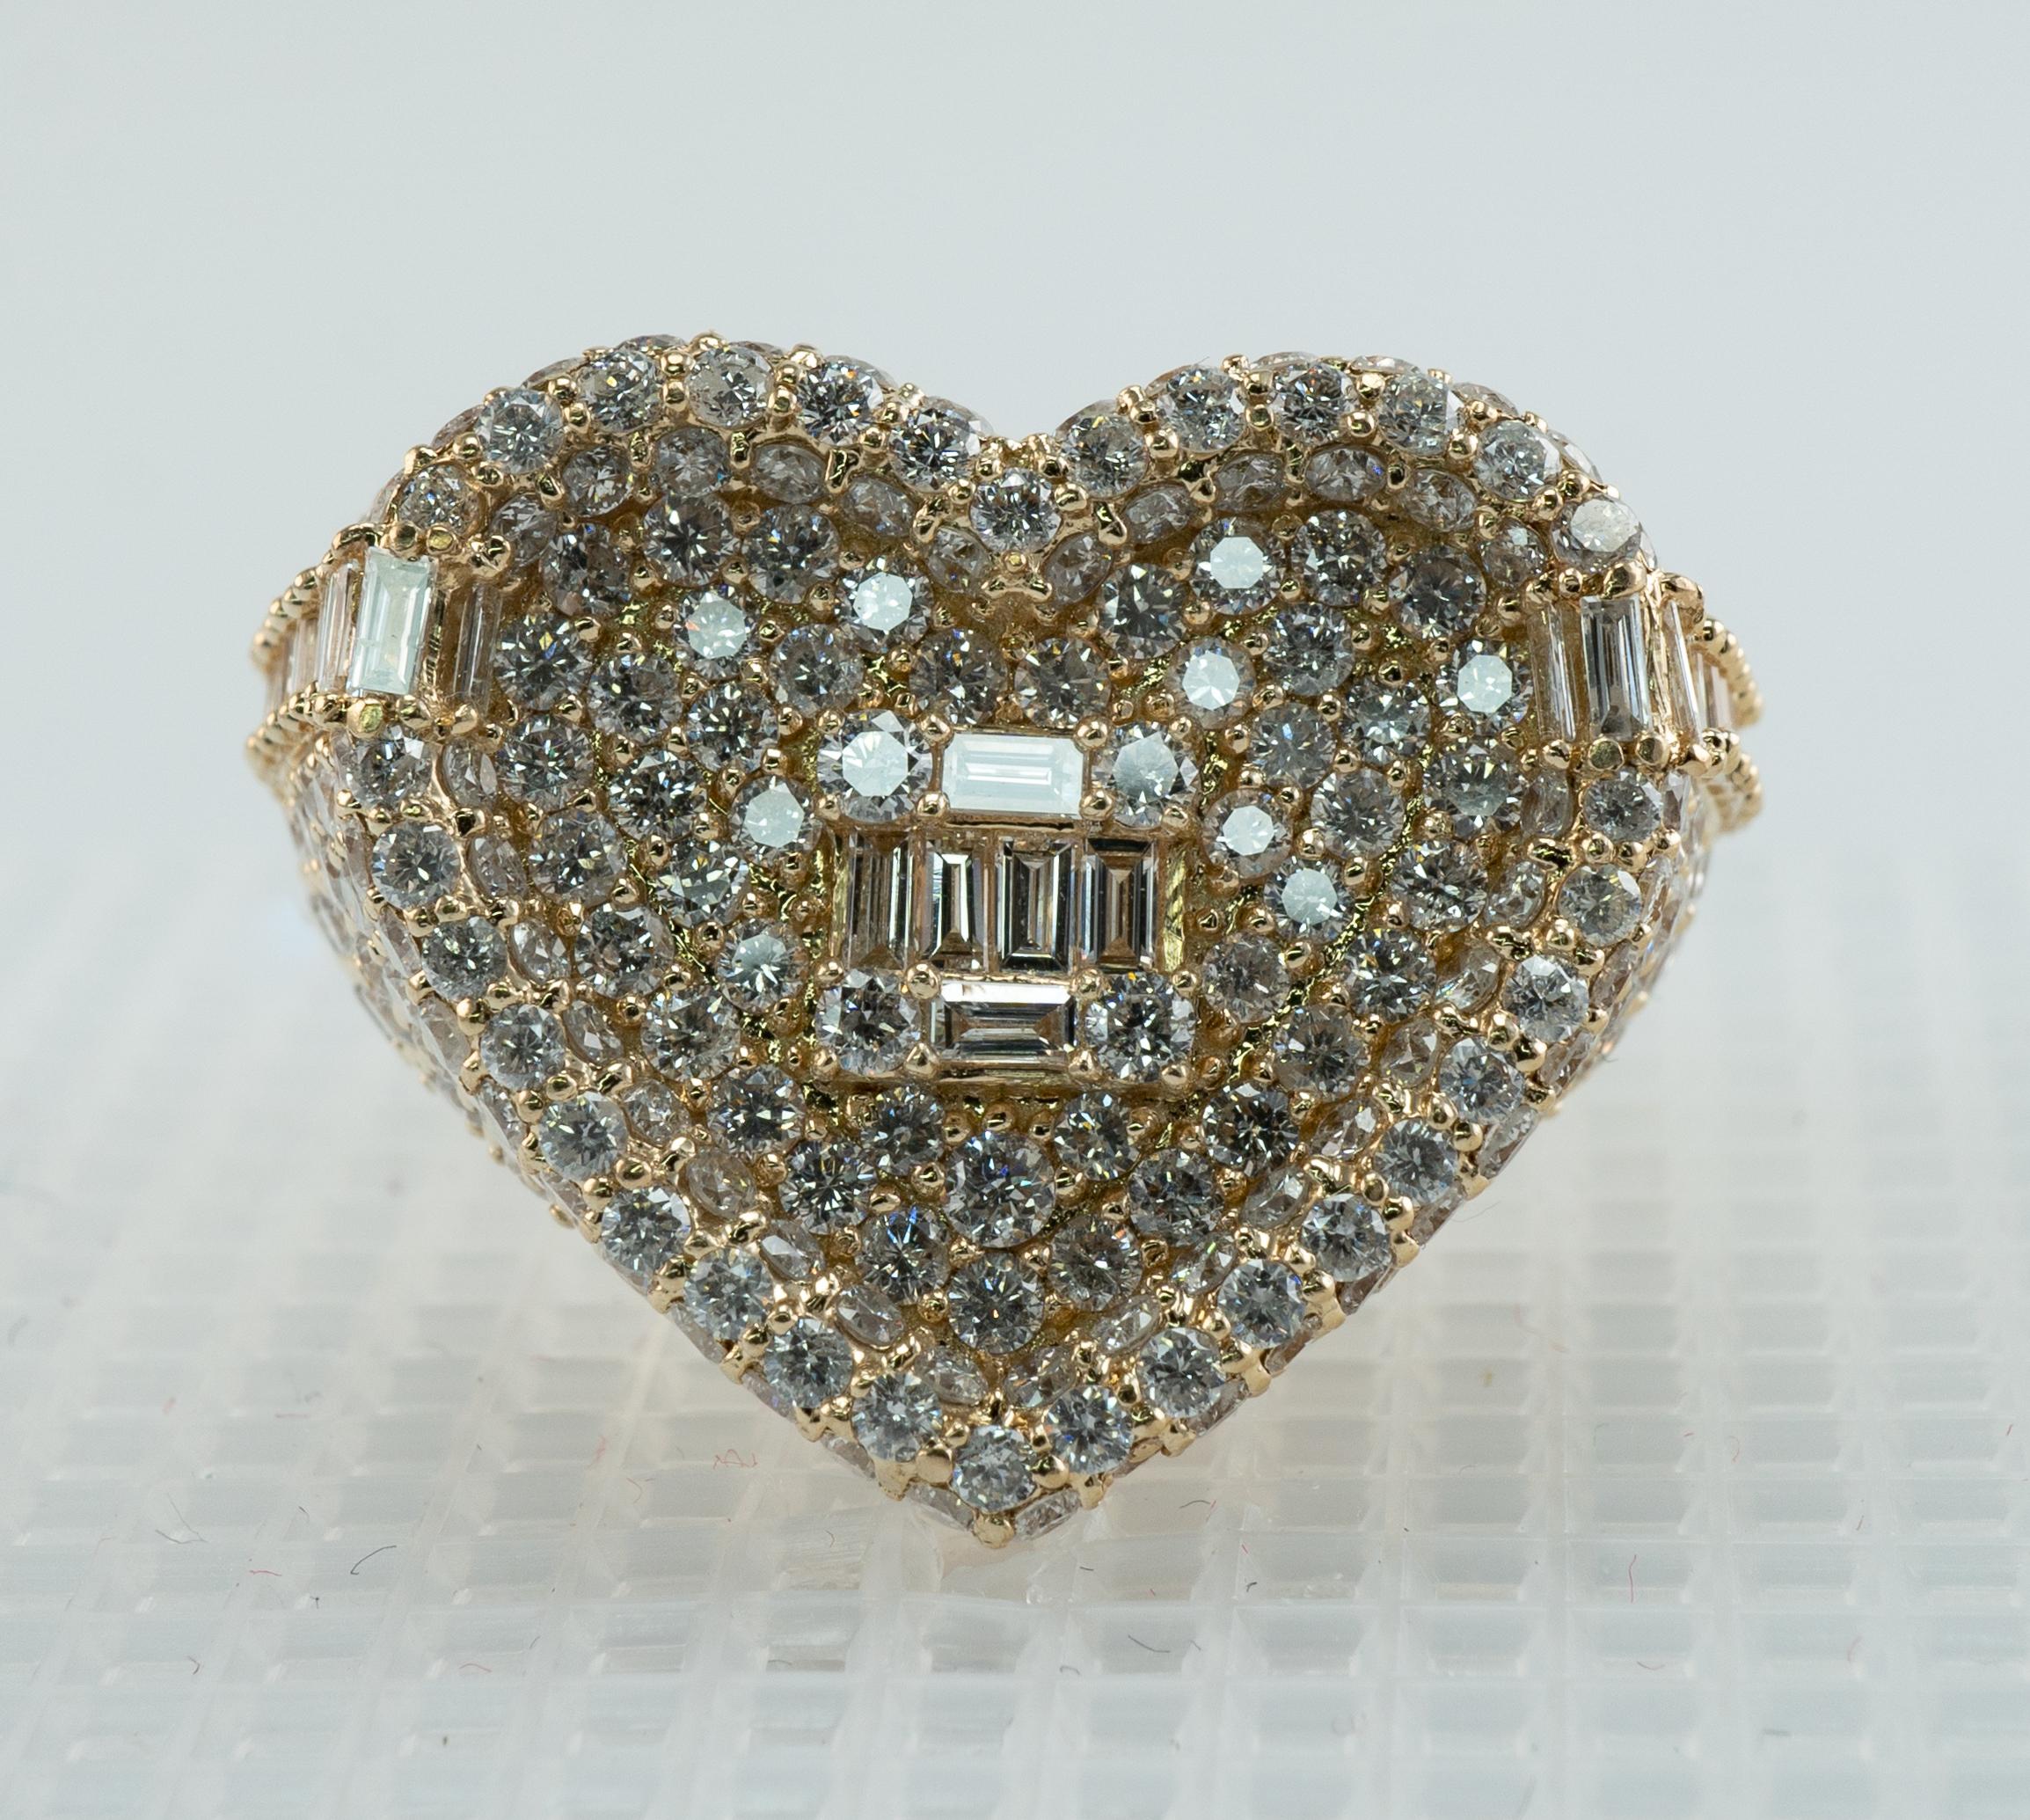 Bague en or 14K avec diamant naturel en forme de coeur 3,74 cts par Yashar Jewelry

Cette bague de succession est en forme de cœur.
La bague est sertie d'environ 295 diamants ronds et 26 diamants baguettes.
Les diamants sont de pureté SI1-SI2 et de